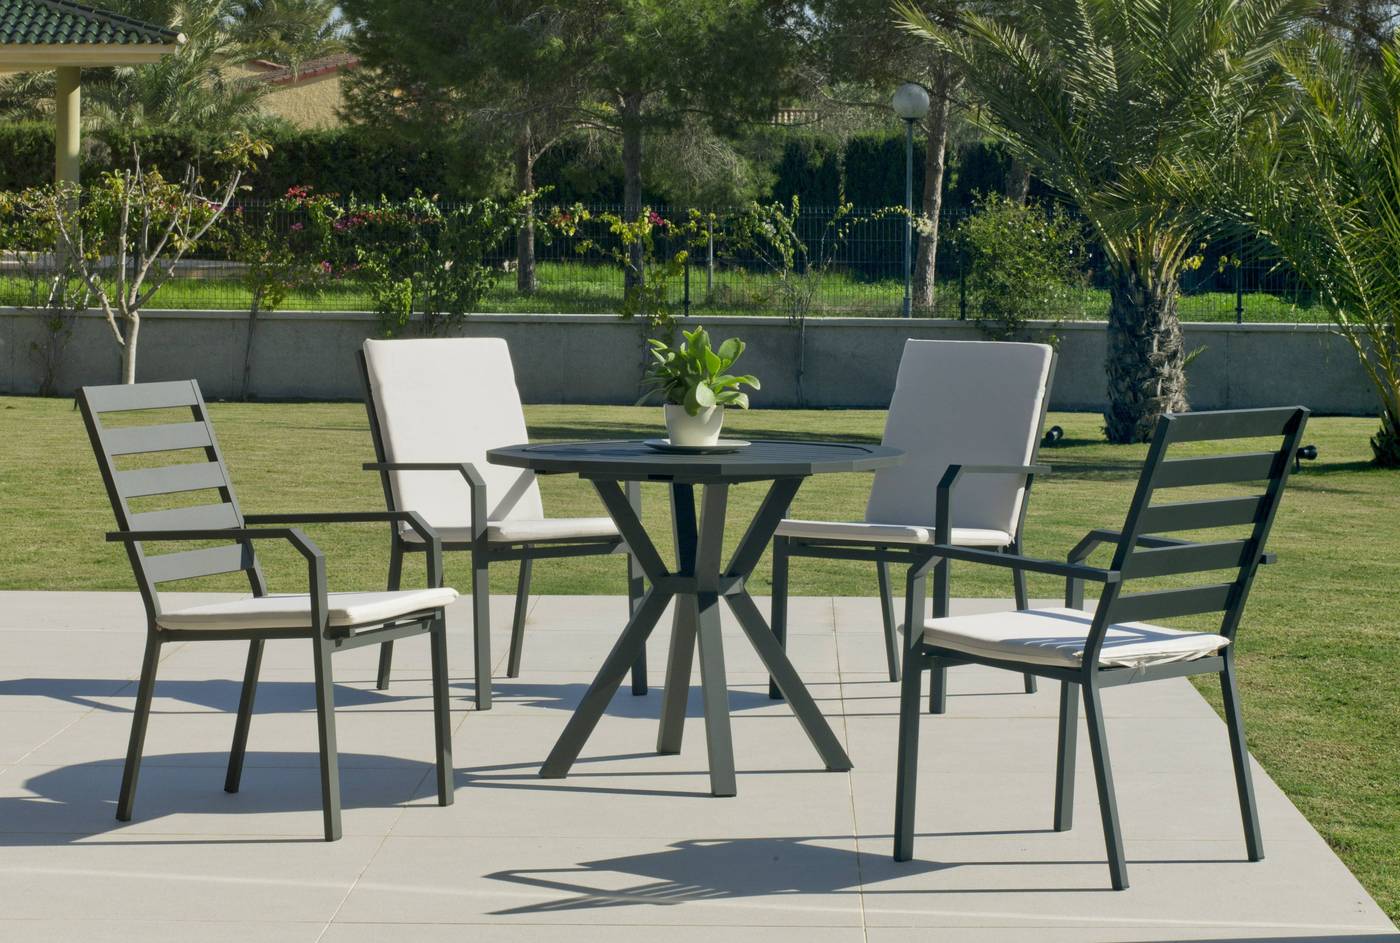 Moderno conjunto de aluminio luxe: Mesa de comedor poligonal de 110 cm. + 4 sillones. Disponible en color blanco, plata y antracita.